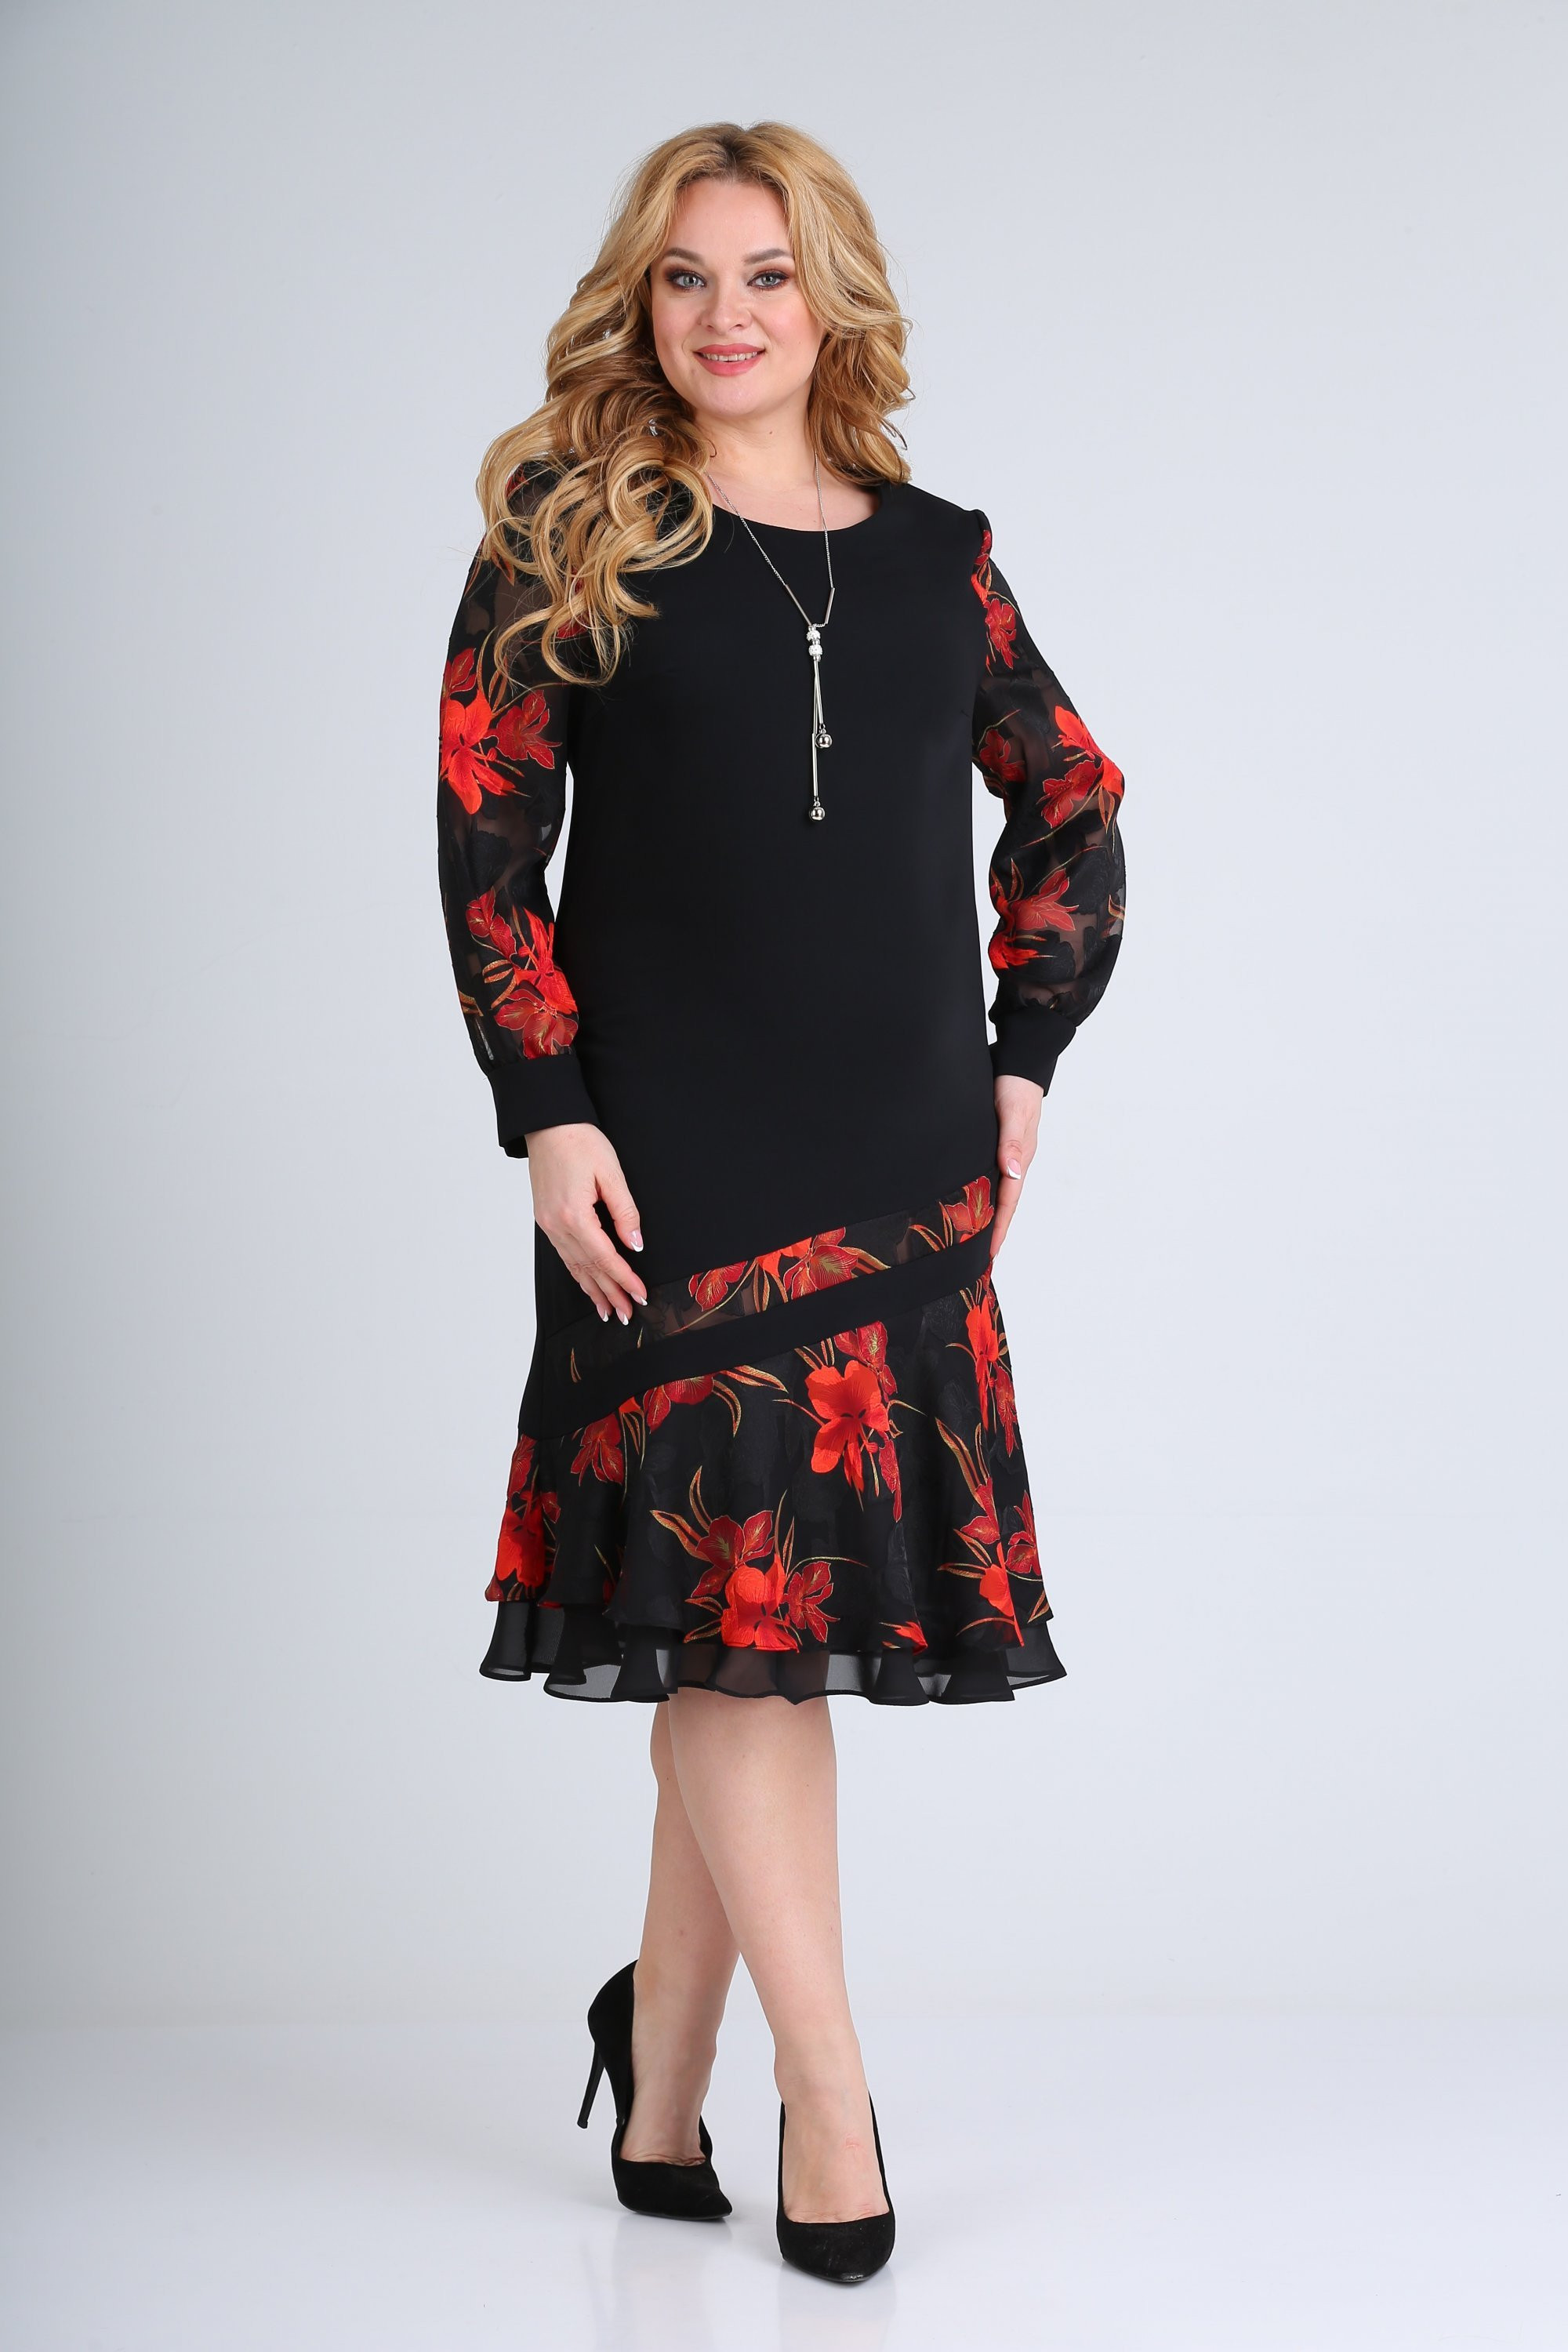 Платье Мода-Версаль 2211 черный красный